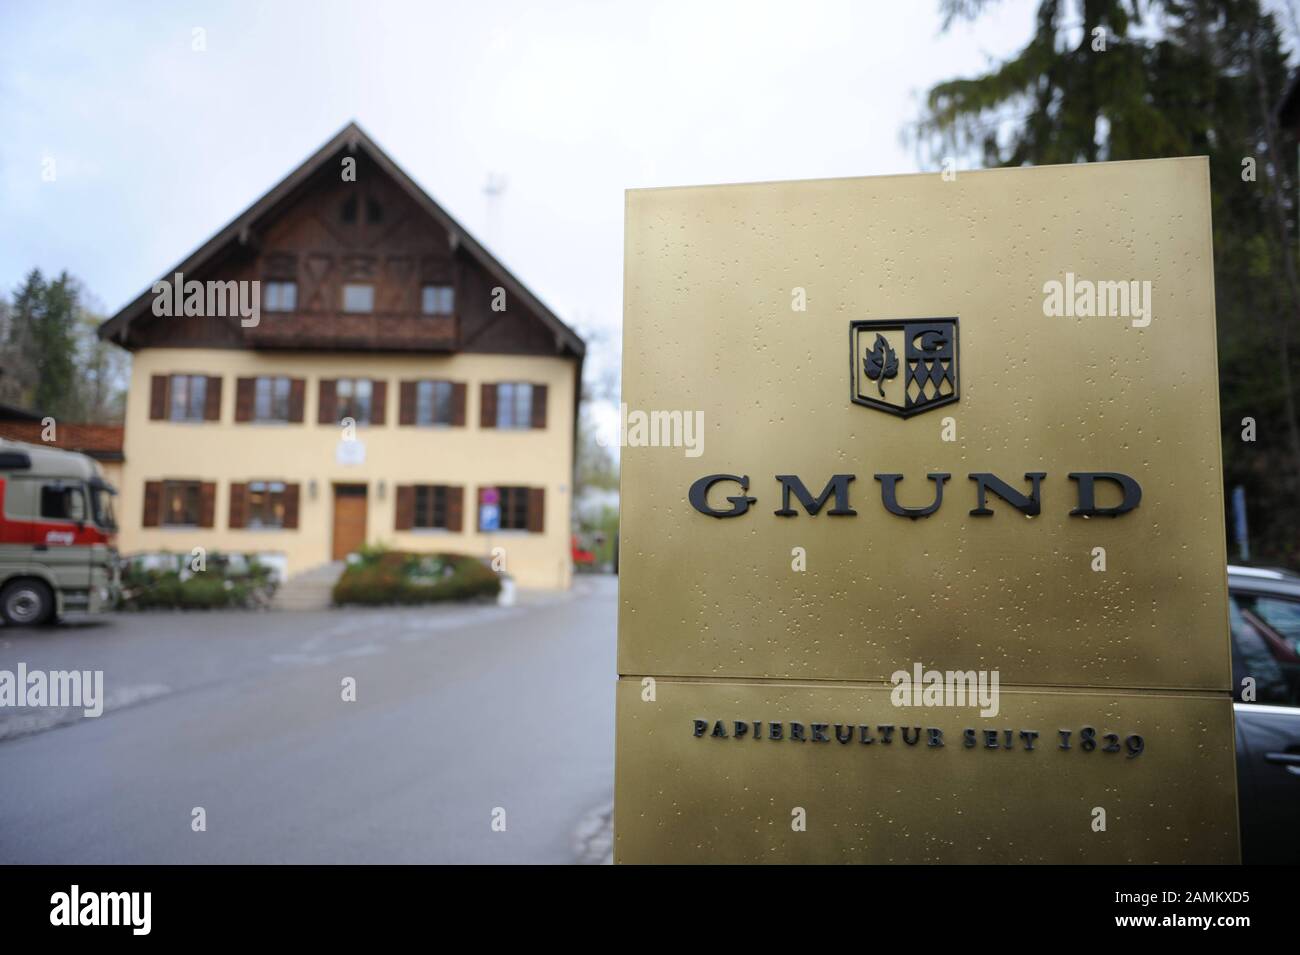 Costruzione della cartiera artigianale Gmund a Gmund su Tegernsee. Il business familiare, che produce carta fine dal 1829, è ora alla sua quarta generazione e conta 120 dipendenti. [traduzione automatizzata] Foto Stock